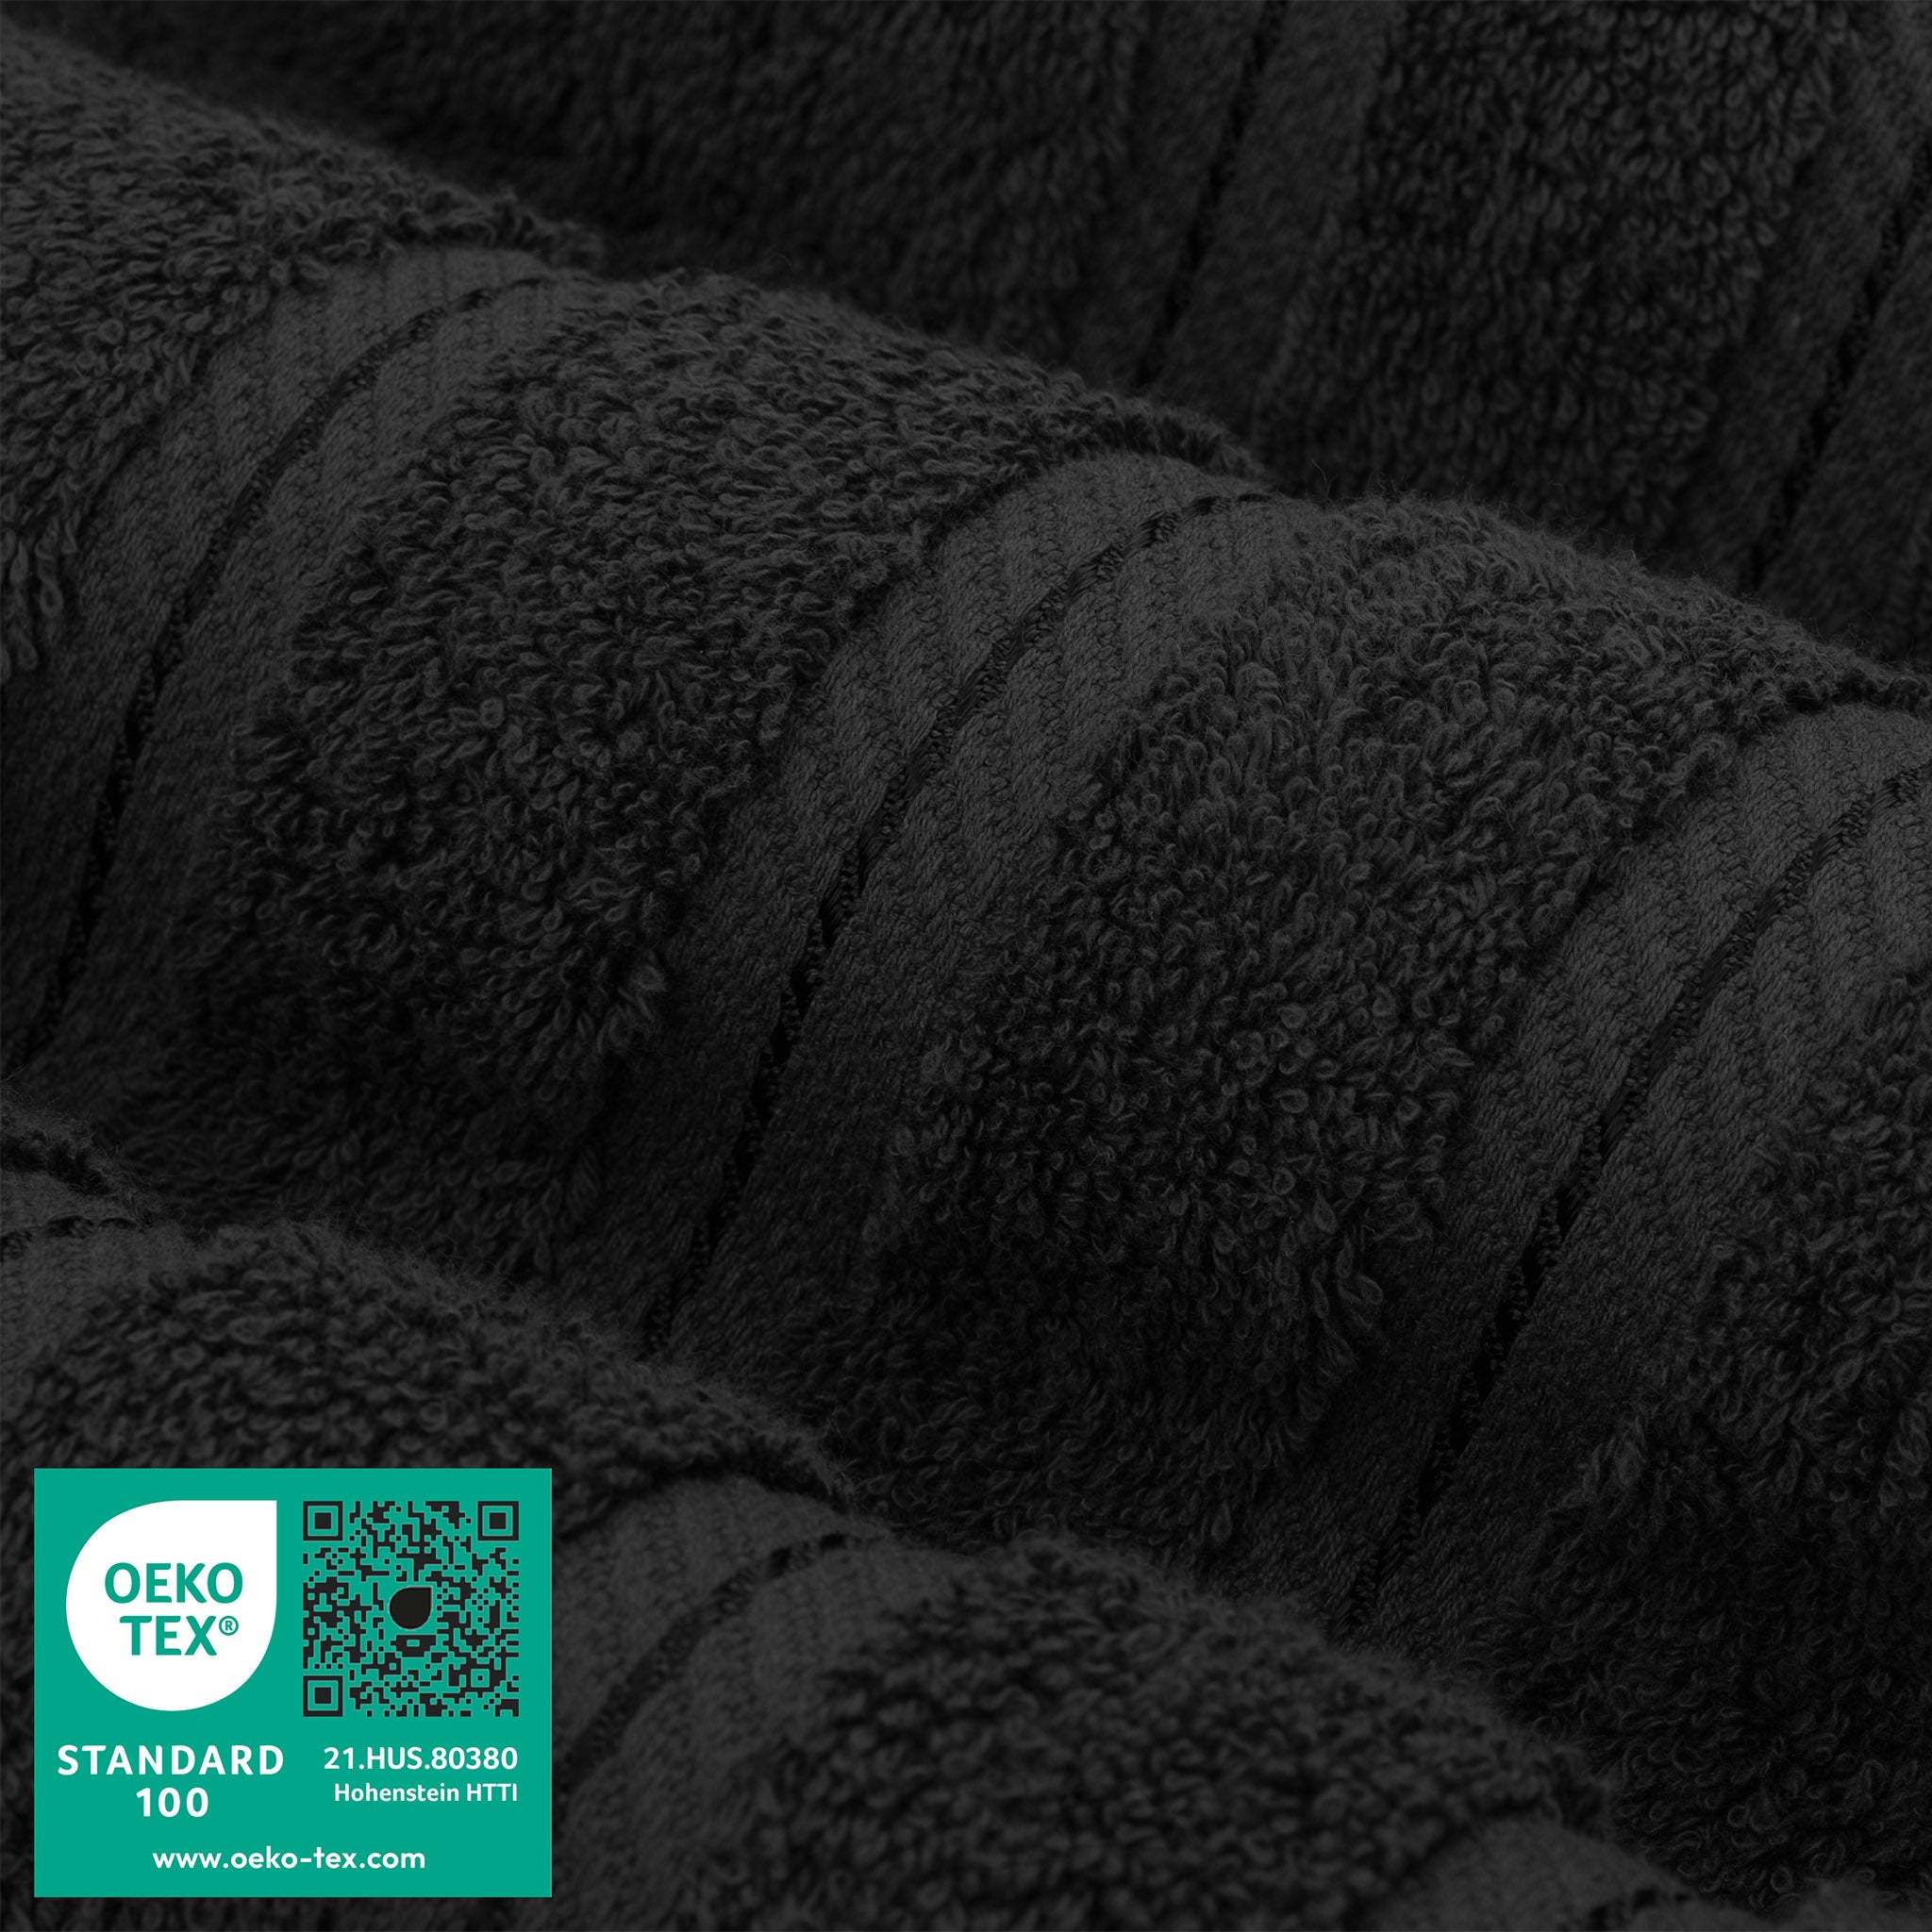 American Soft Linen 100% Turkish Cotton 4 Pack Bath Towel Set Wholesale black-3